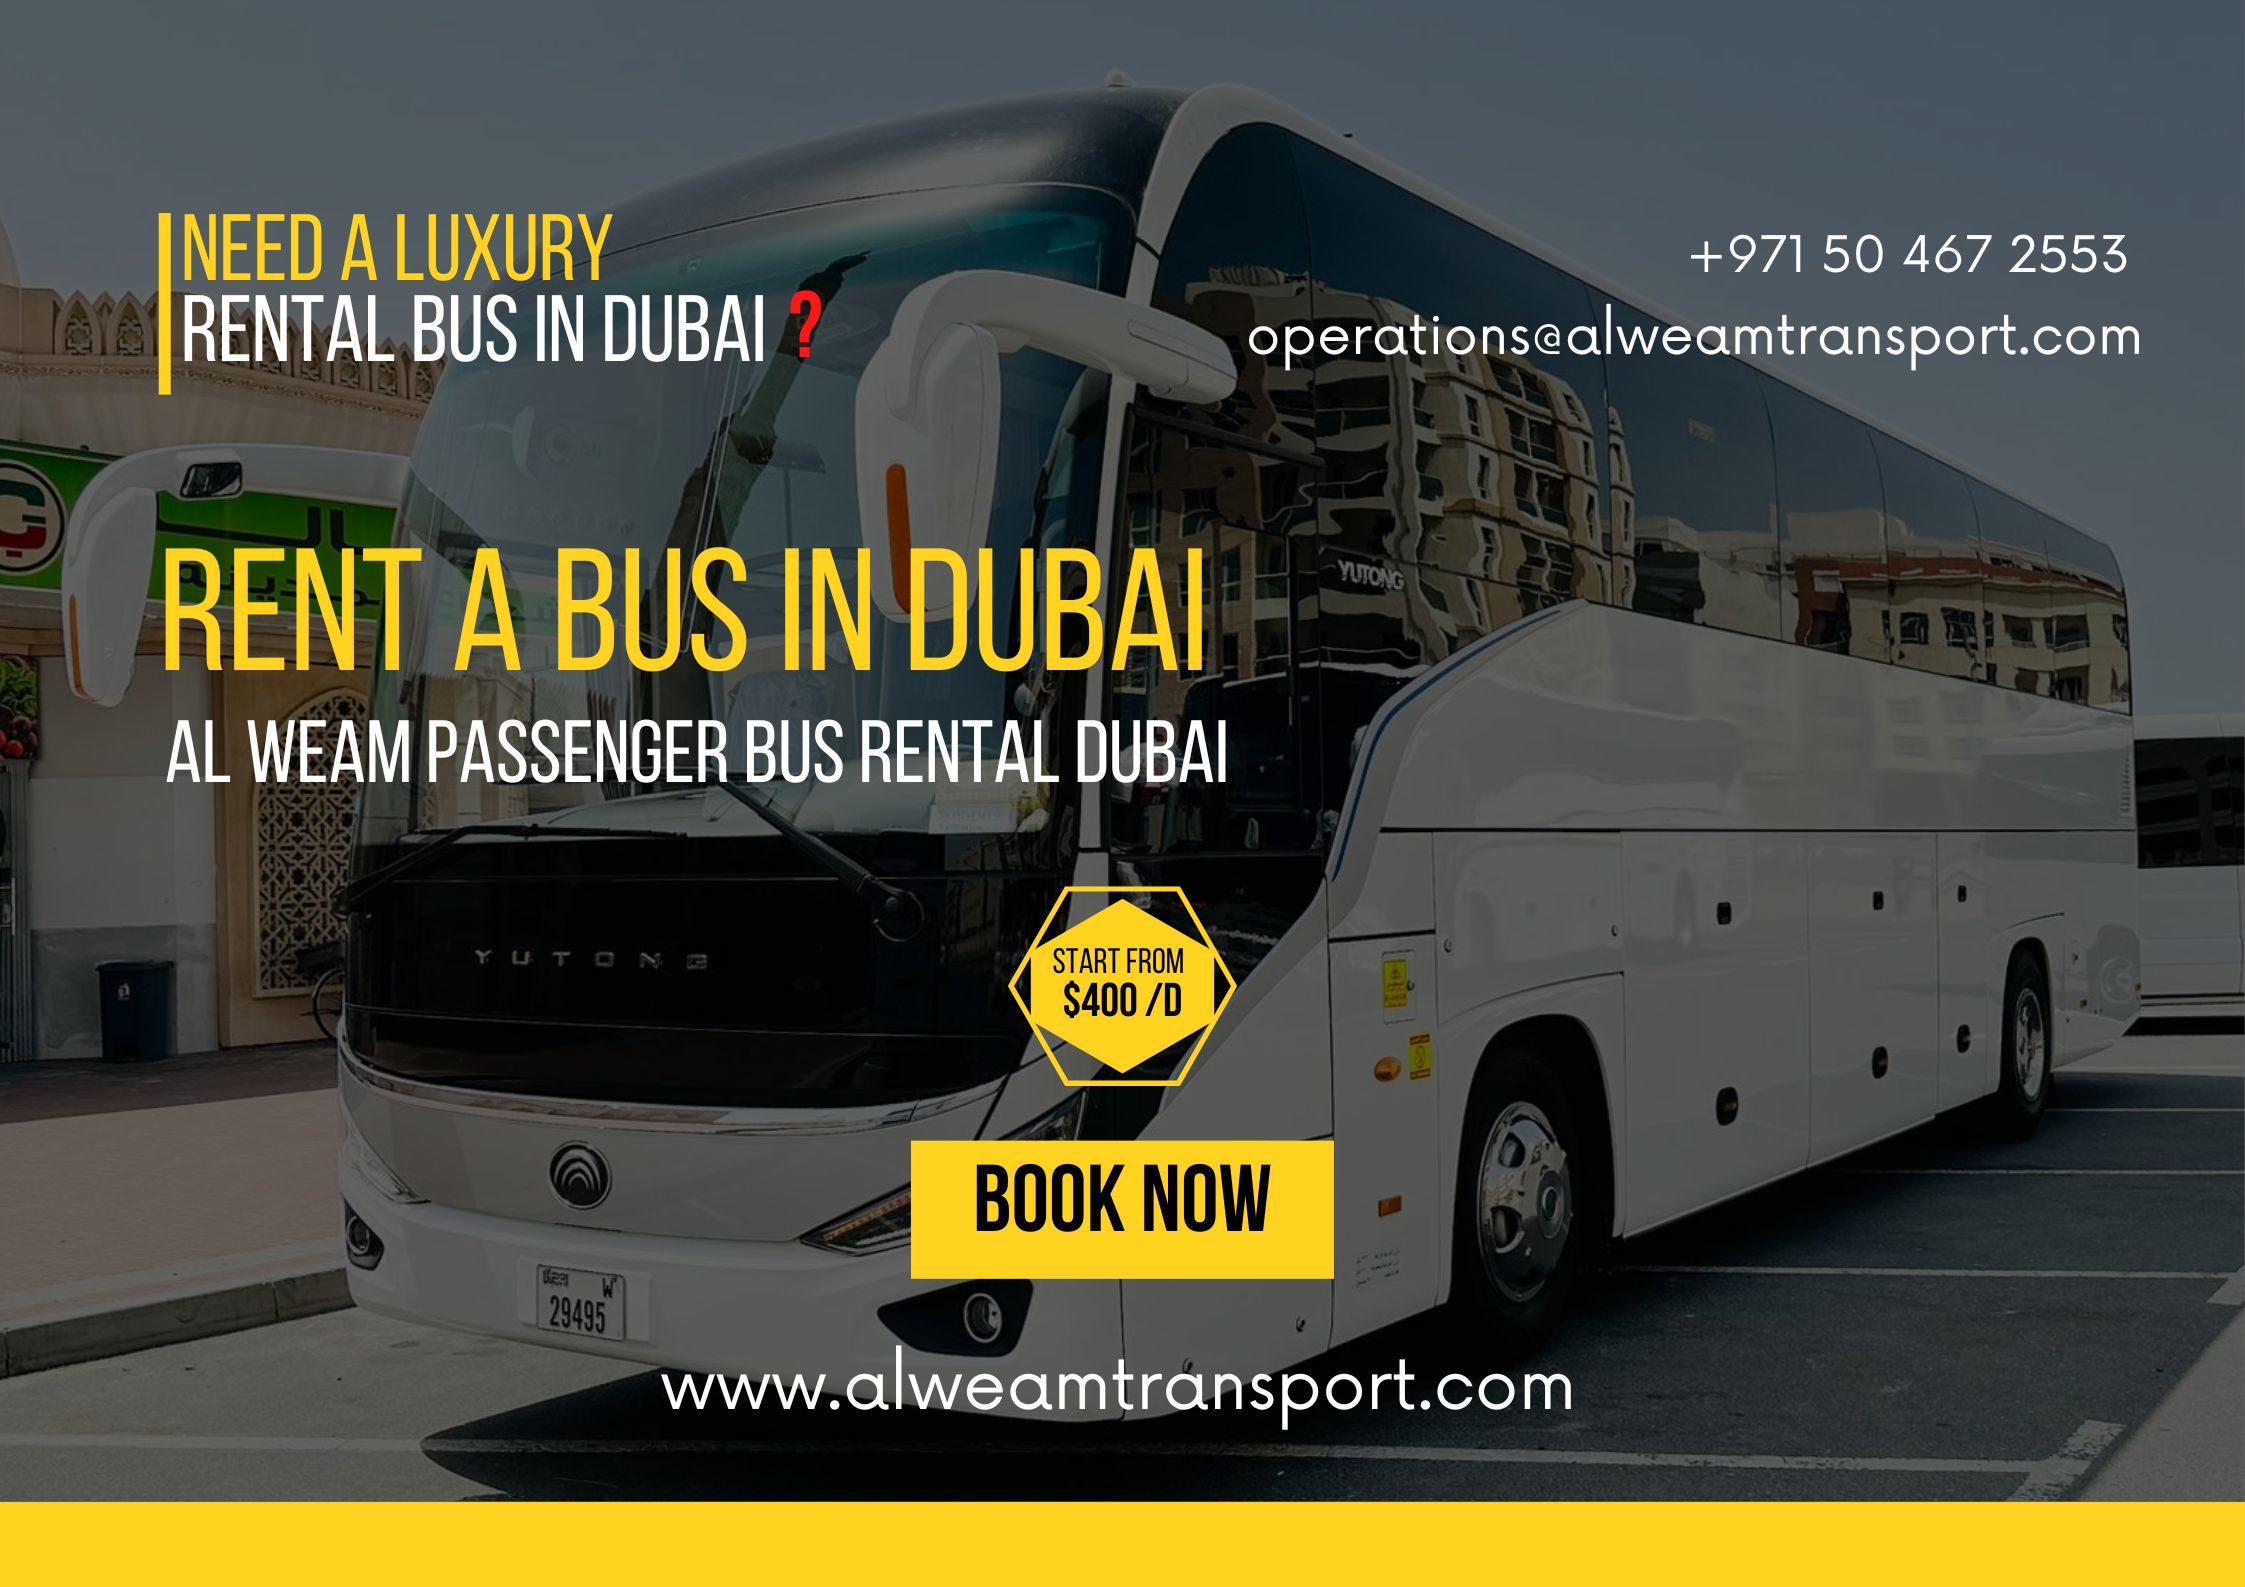 Rent a bus in dubai services by al weam passenger transport bus rental dubai